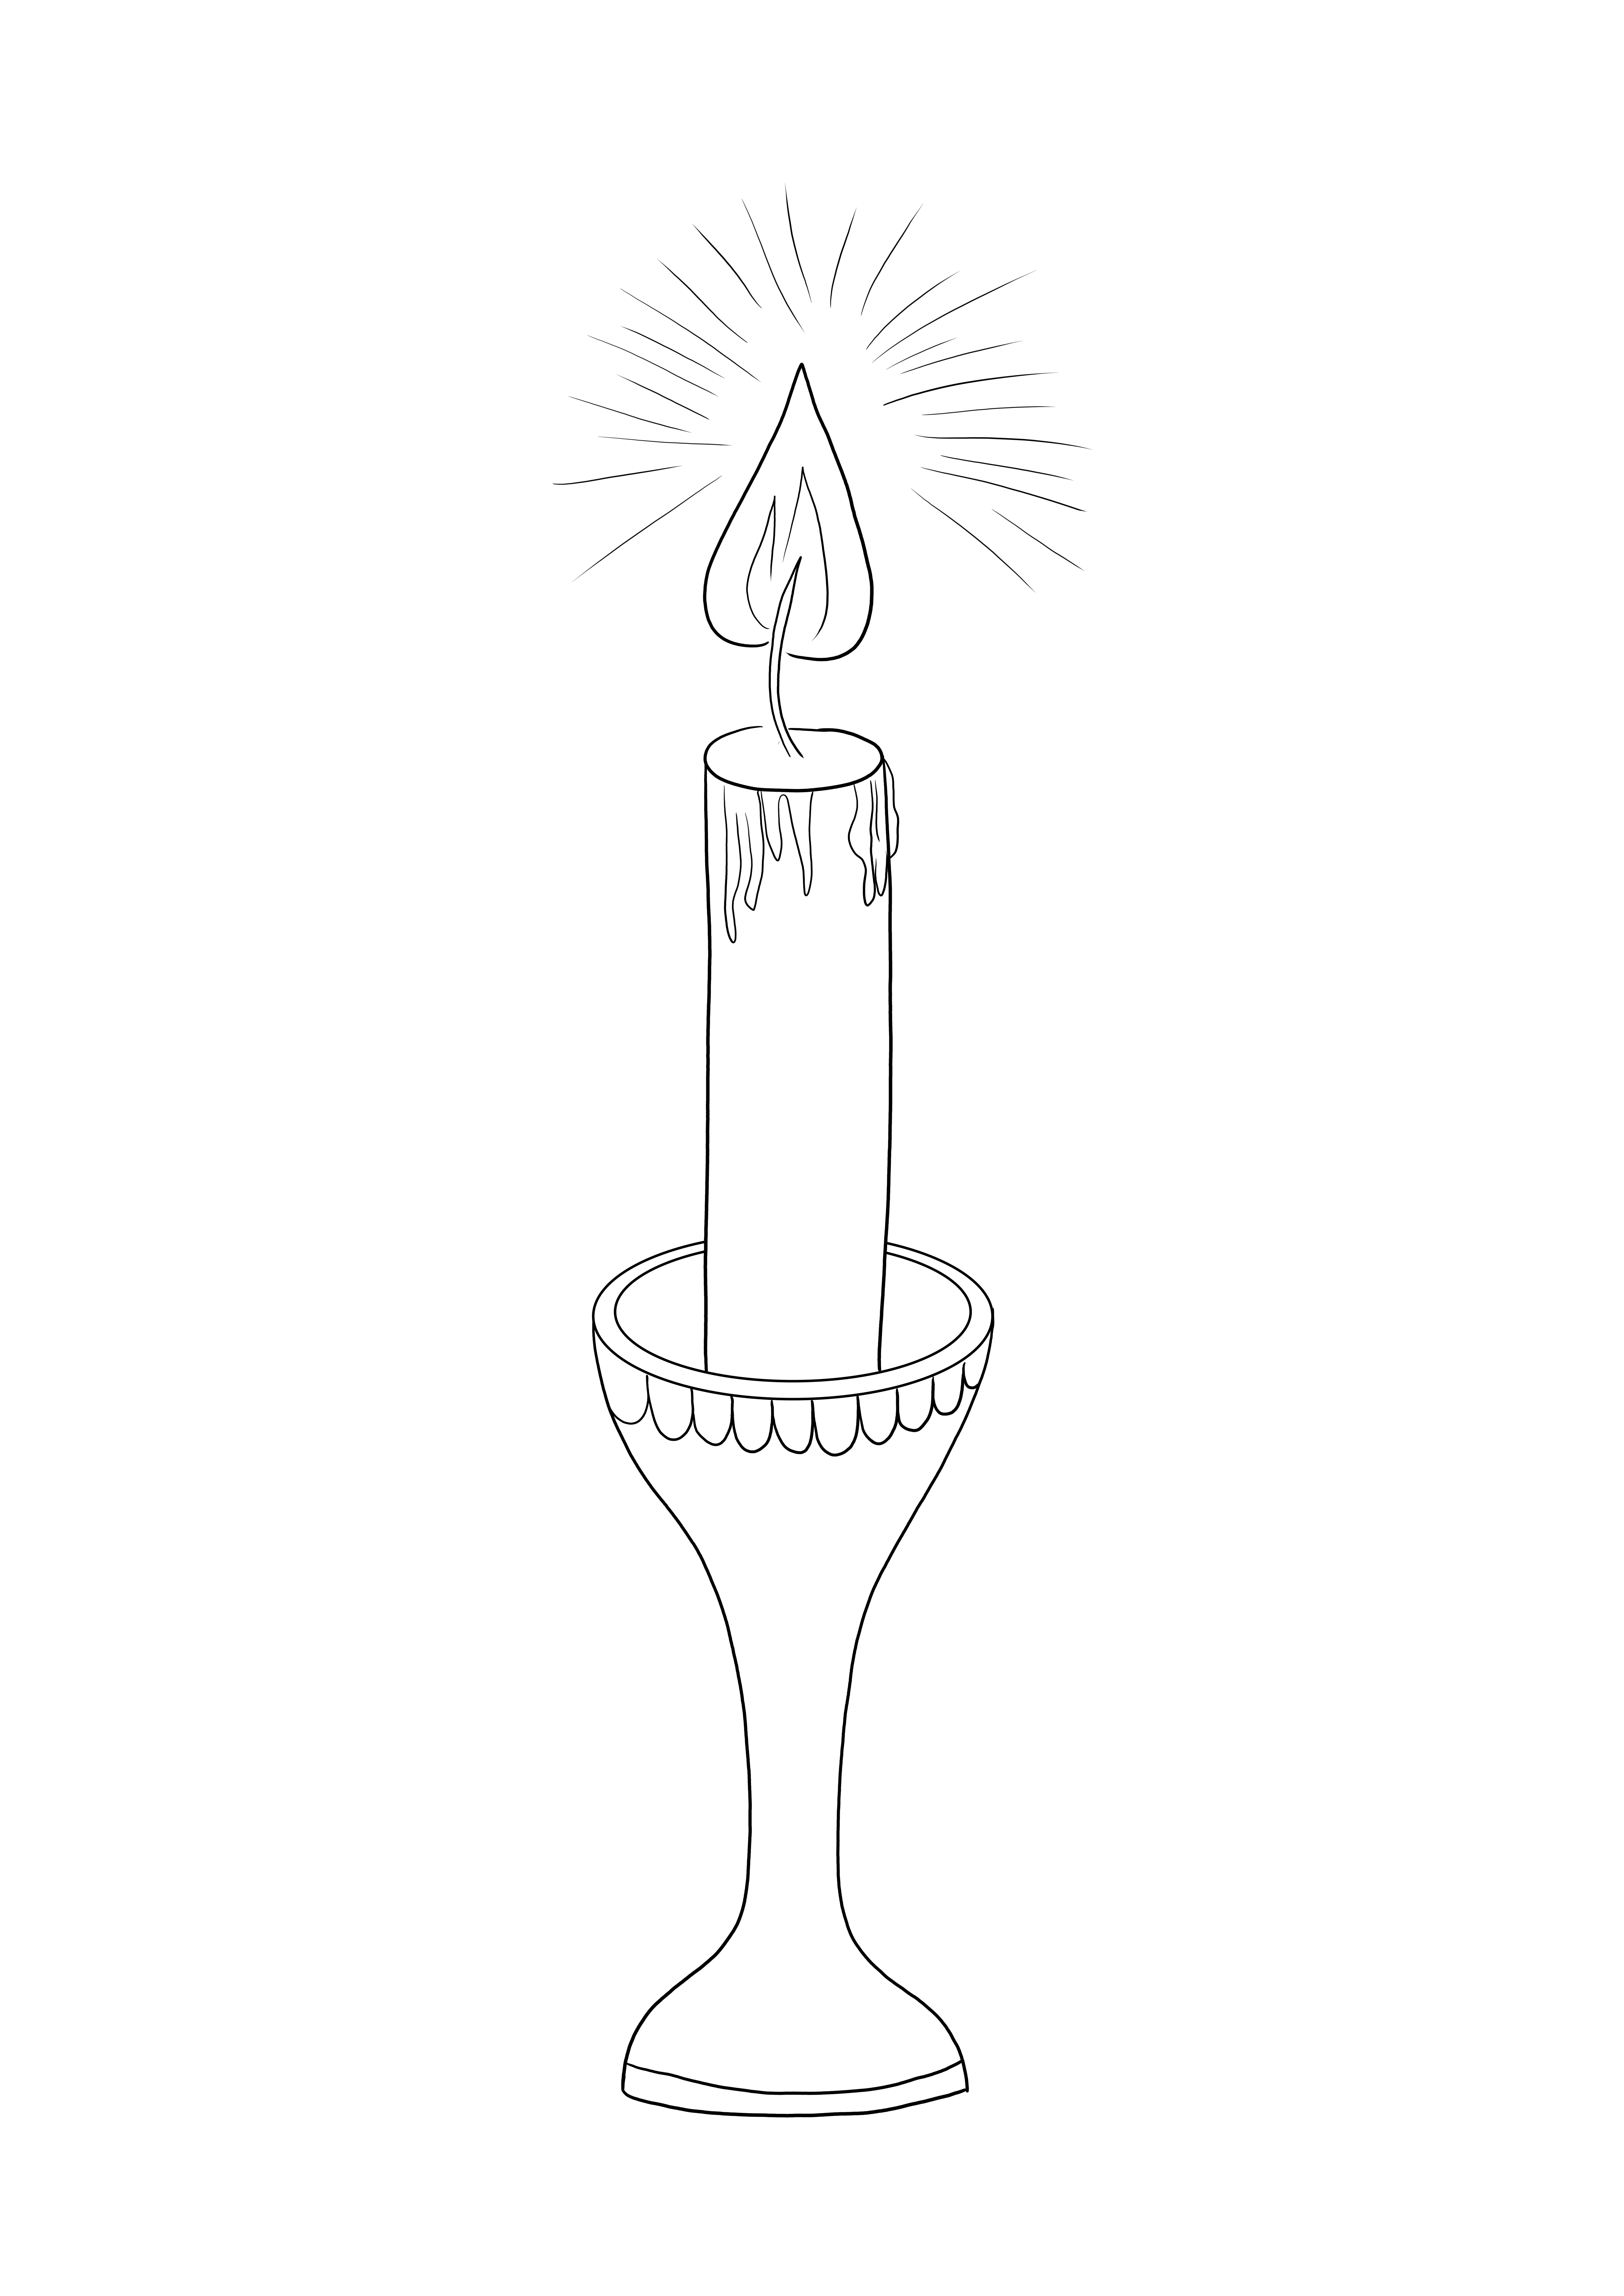 Una vela encendida lista para ser coloreada para una celebración de alegría navideña, para descargar o imprimir gratis